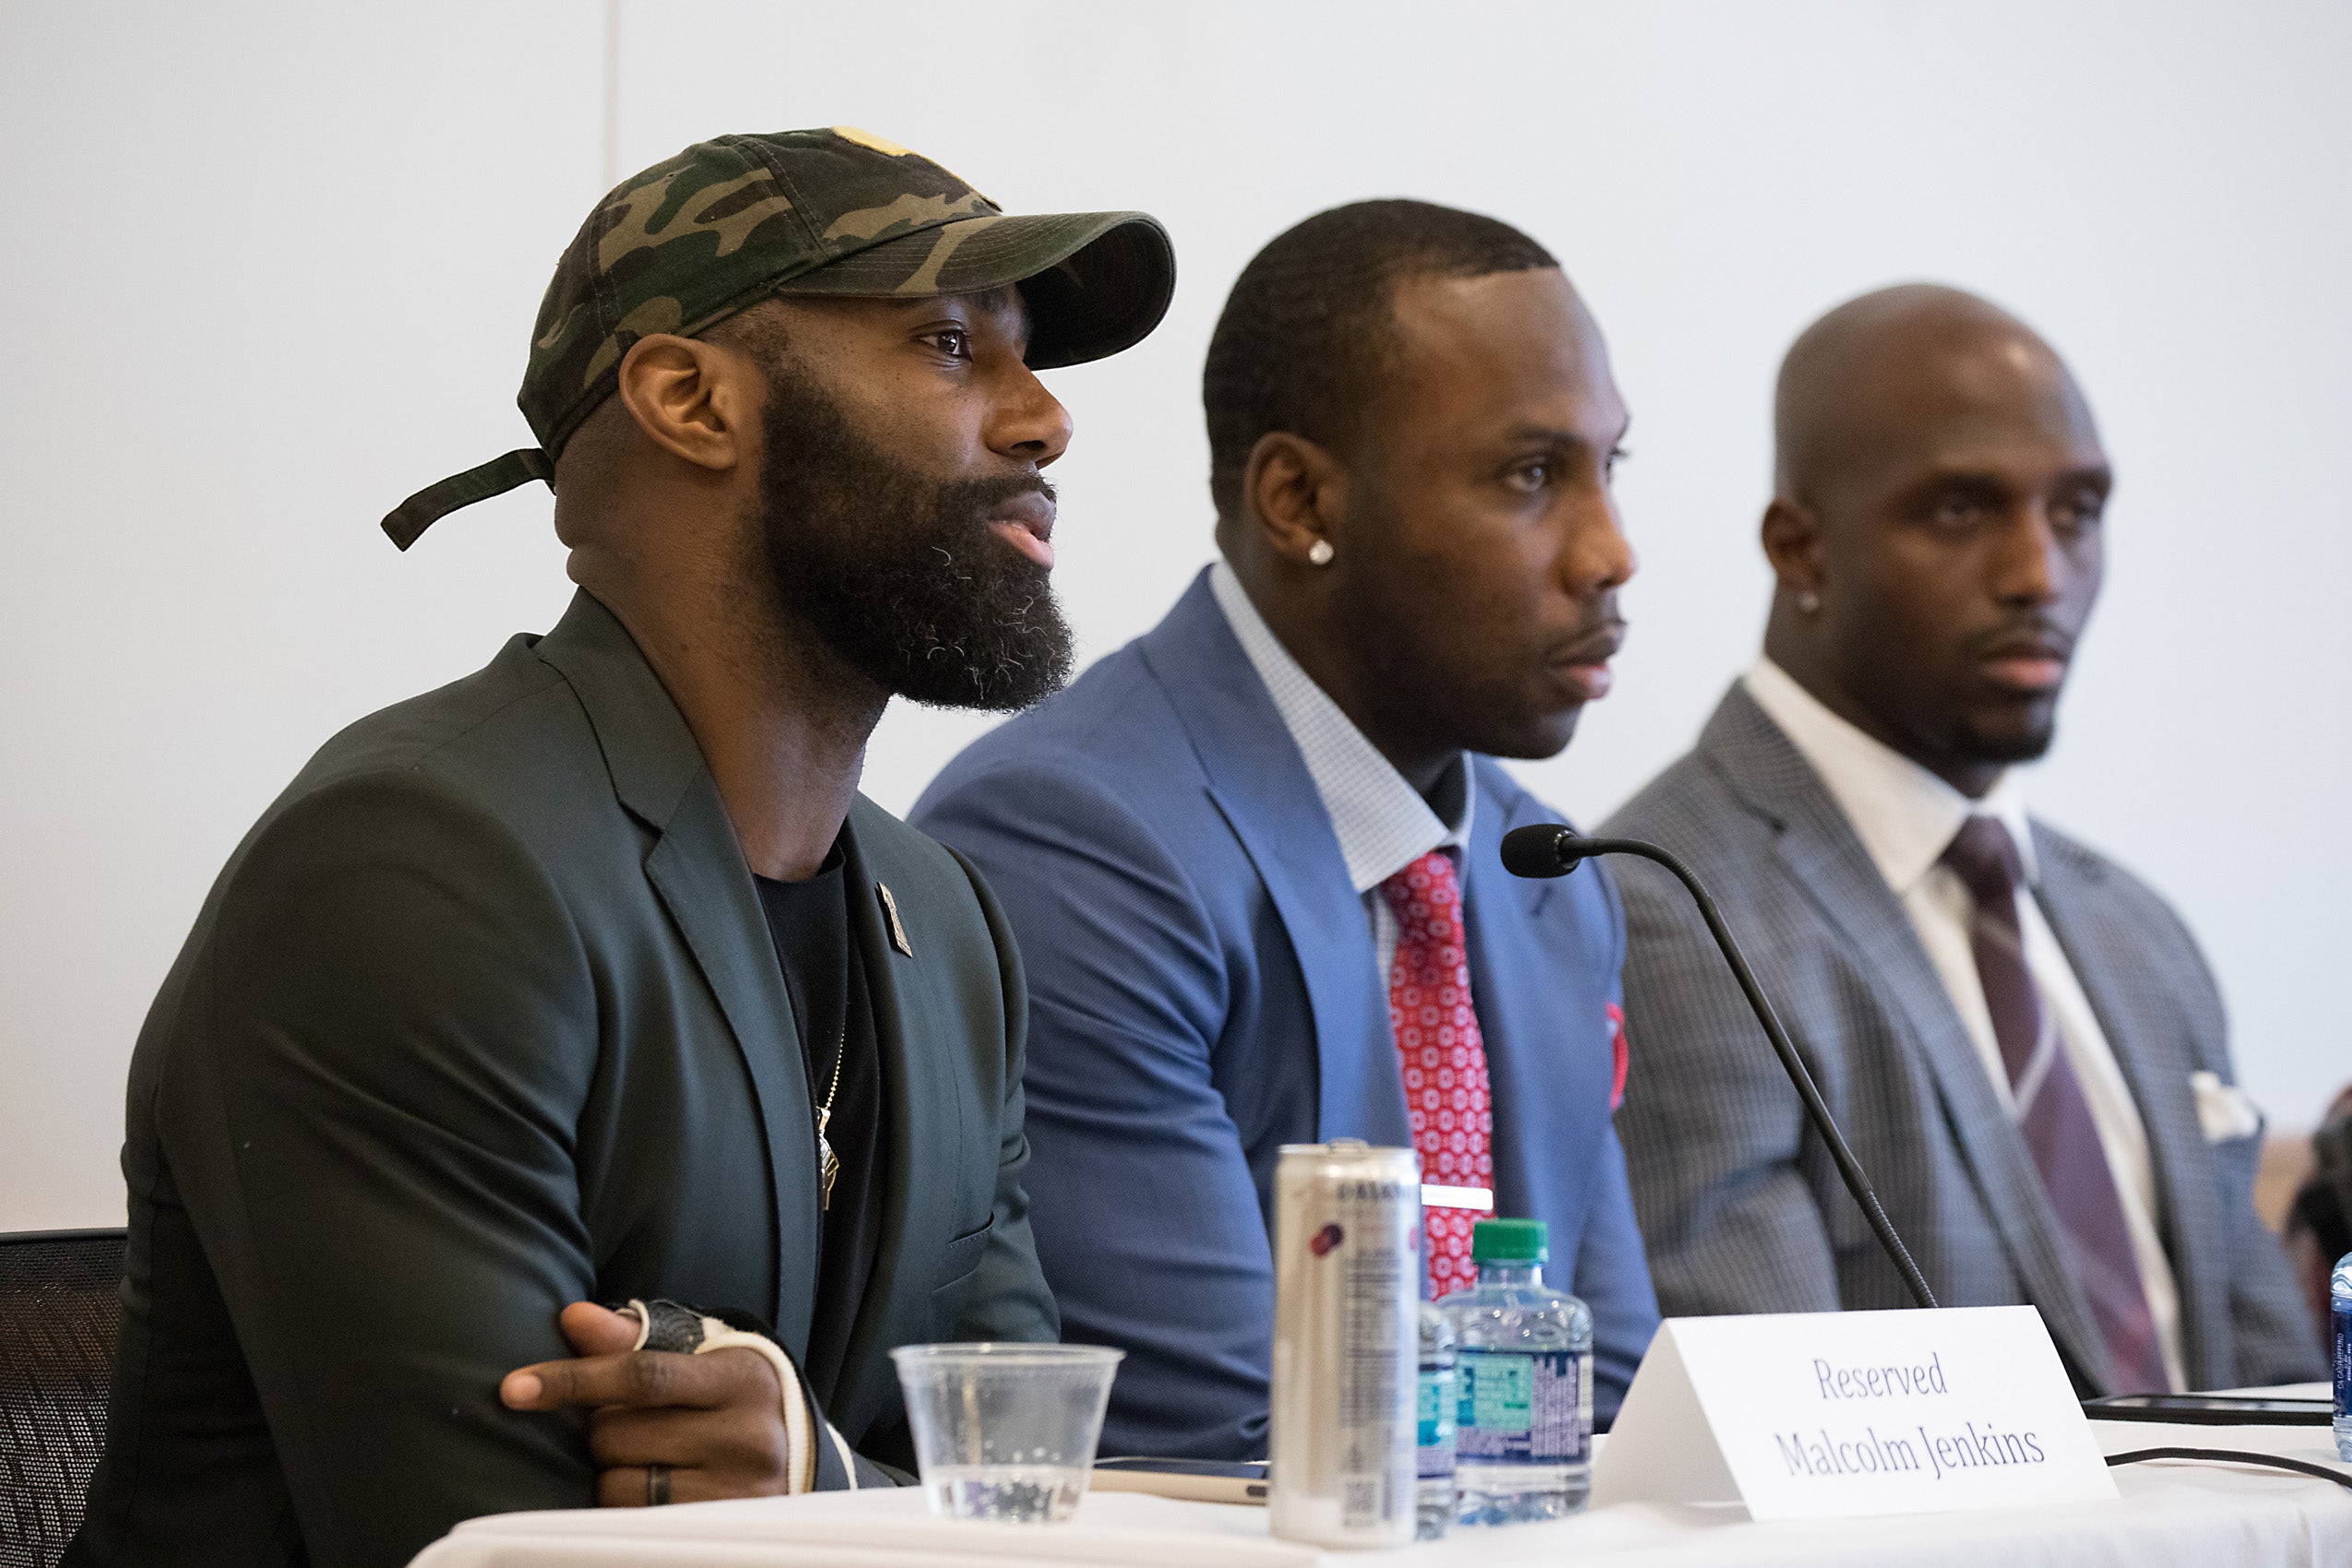 NFL group joins Harvard huddle on criminal justice